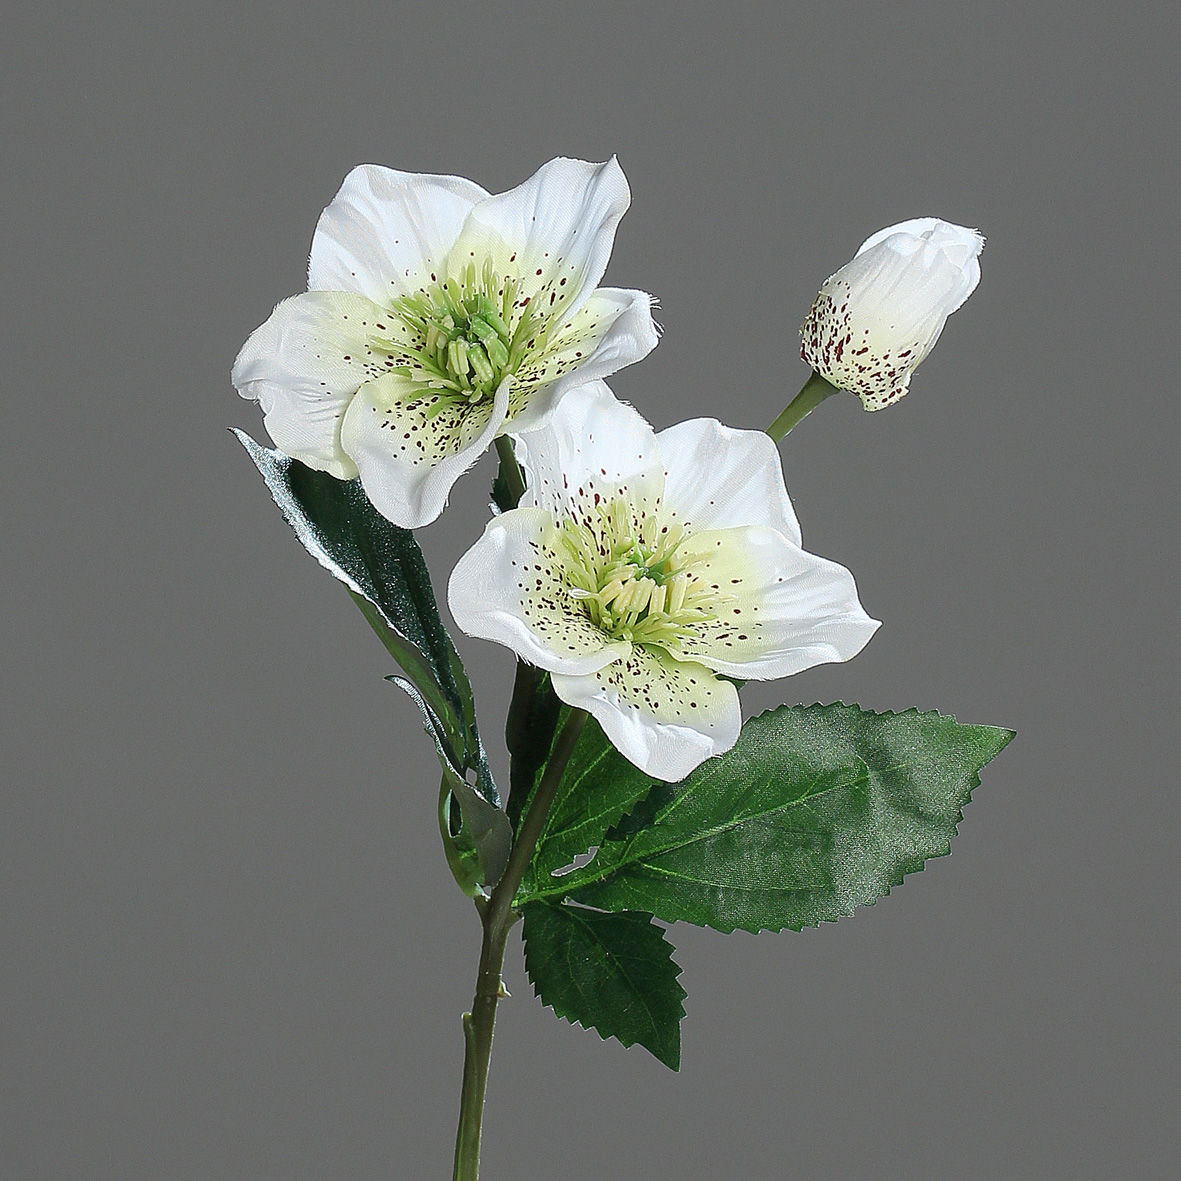 Christrose 34cm creme-weiß DP Kunstblumen künstliche Blumen Christrosenzweig Helleborus